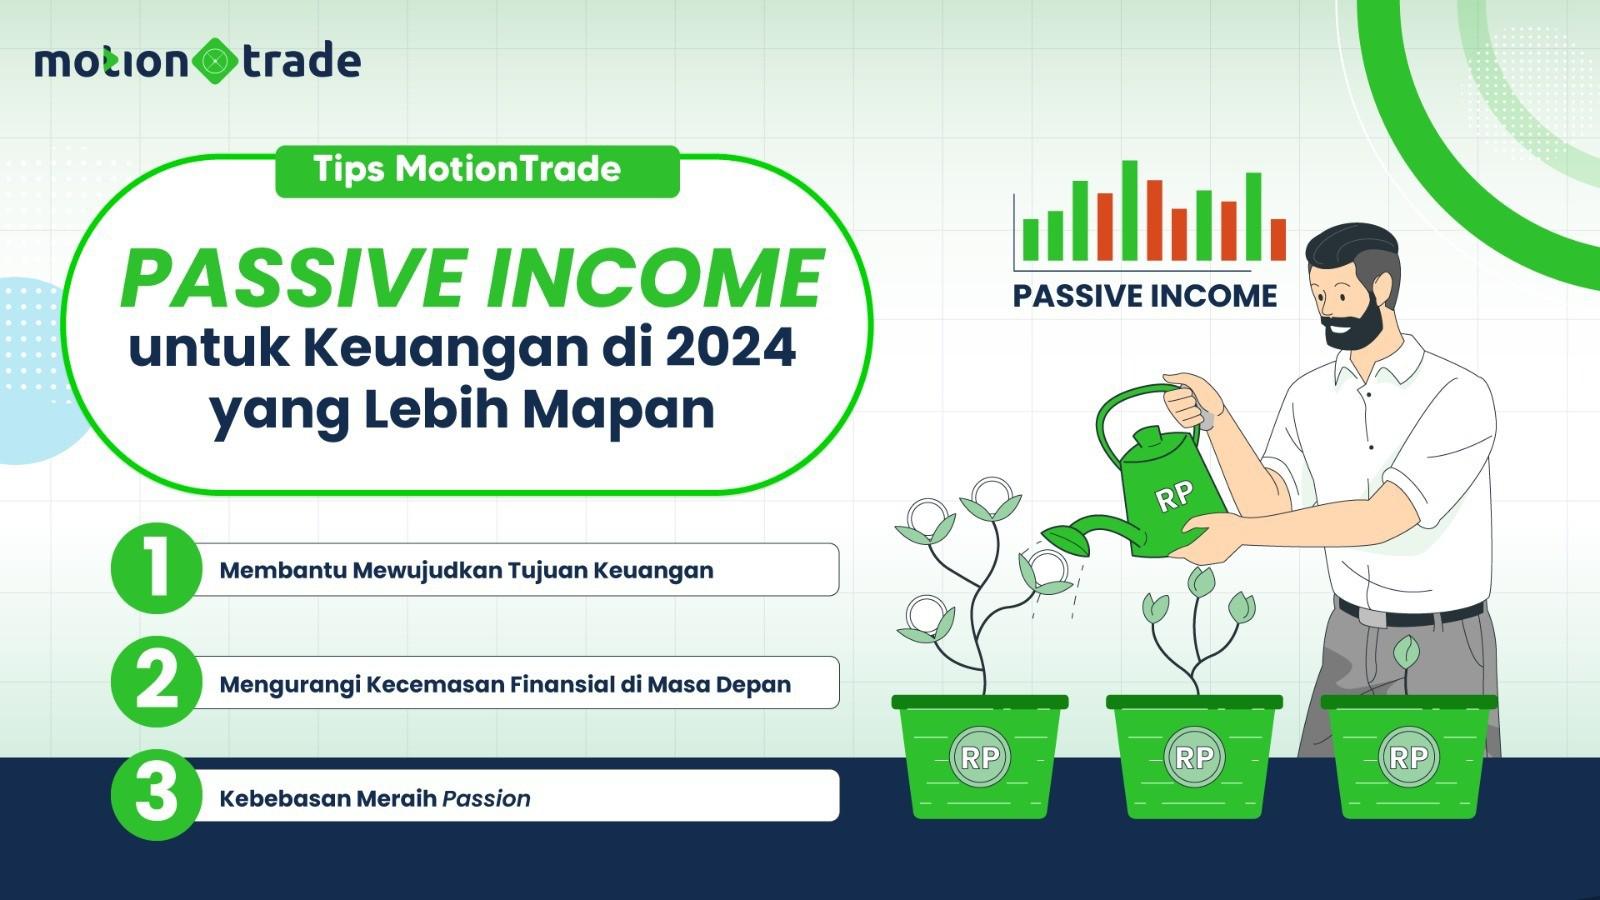 Tips MotionTrade: Passive Income untuk Keuangan di 2024 yang Lebih Mapan